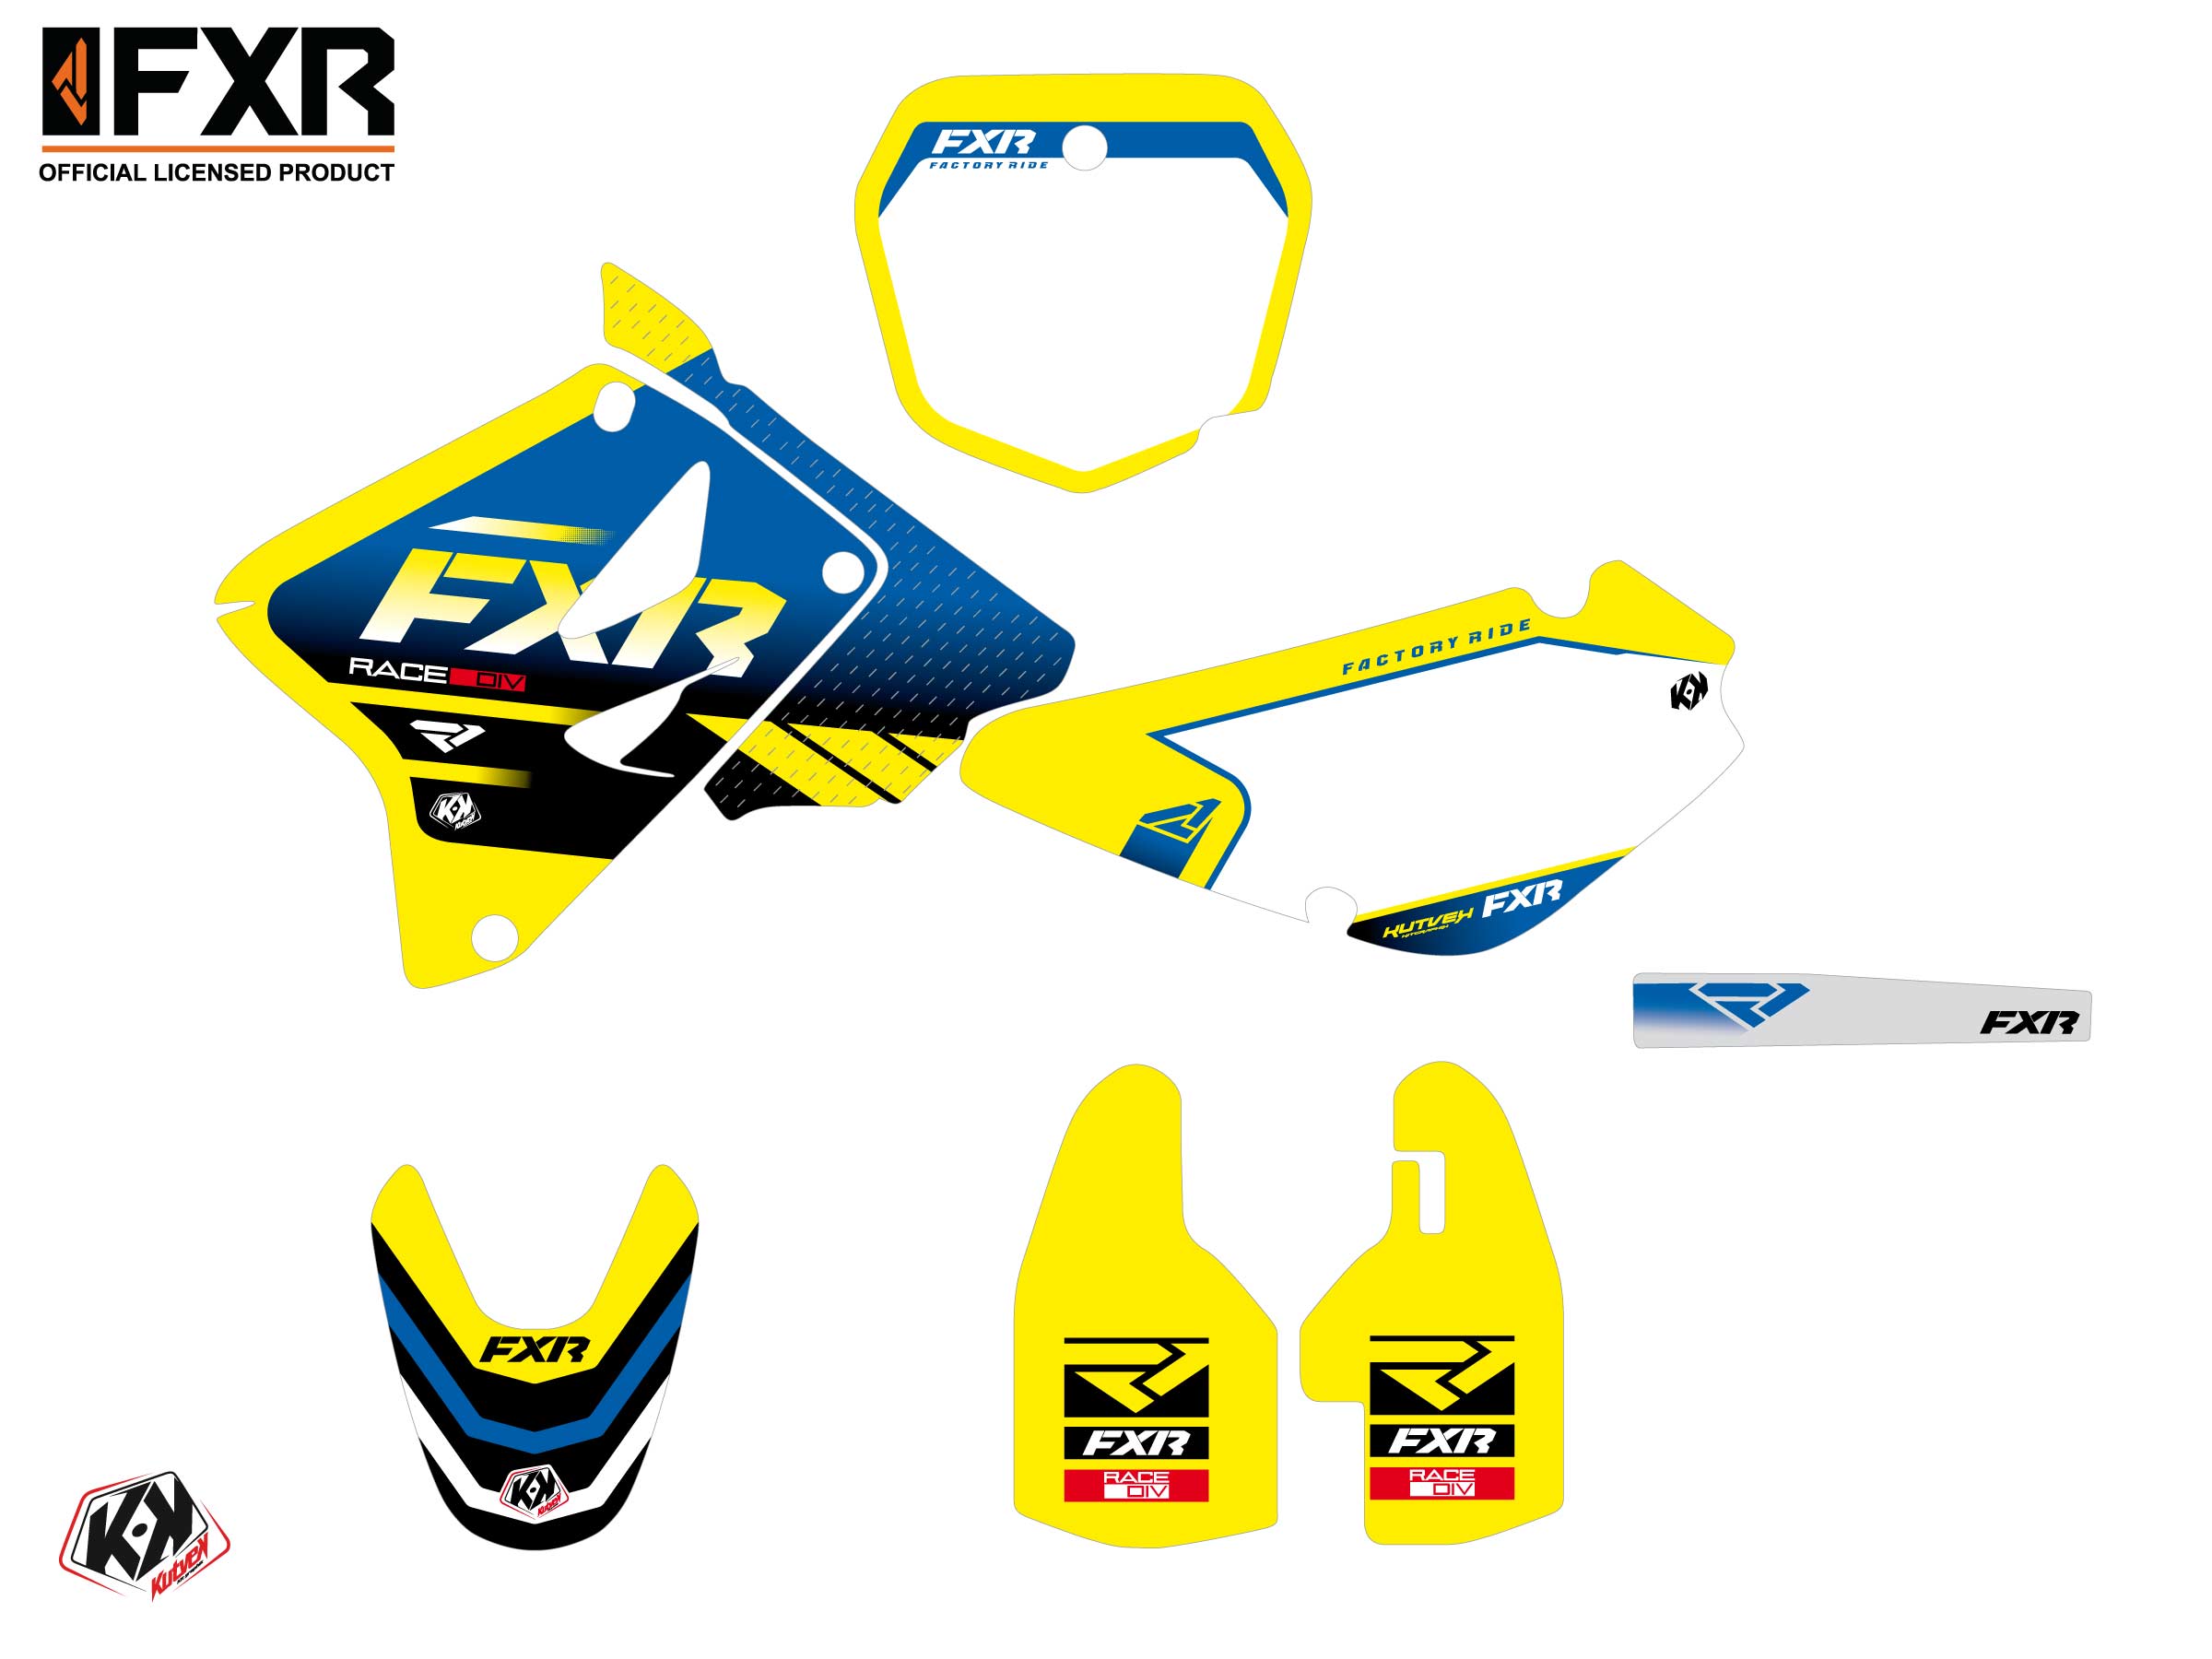 Suzuki Rm 85 Dirt Bike Fxr Revo Graphic Kit Yellow